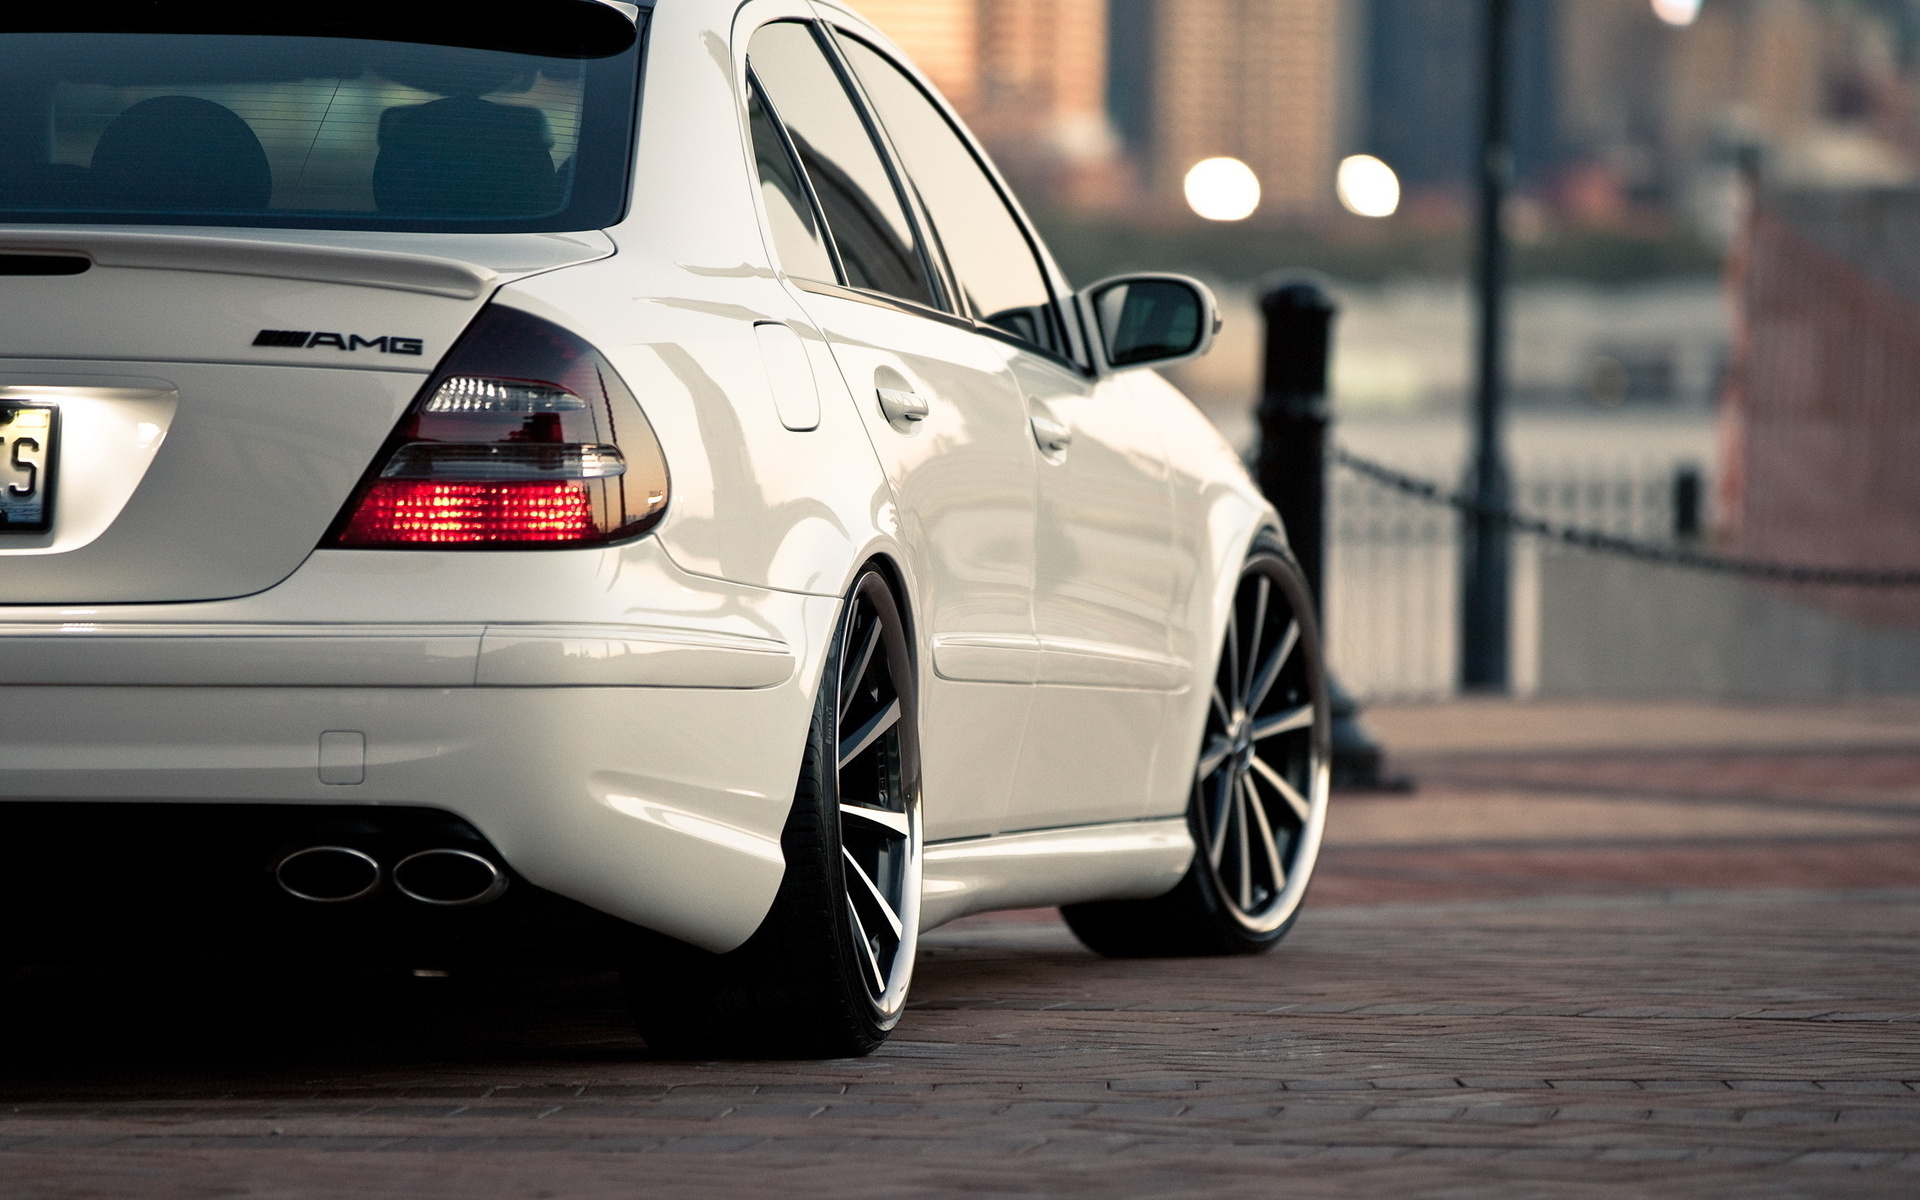 Mercedes-Benz E-Class HD Wallpaper | Background Image ...